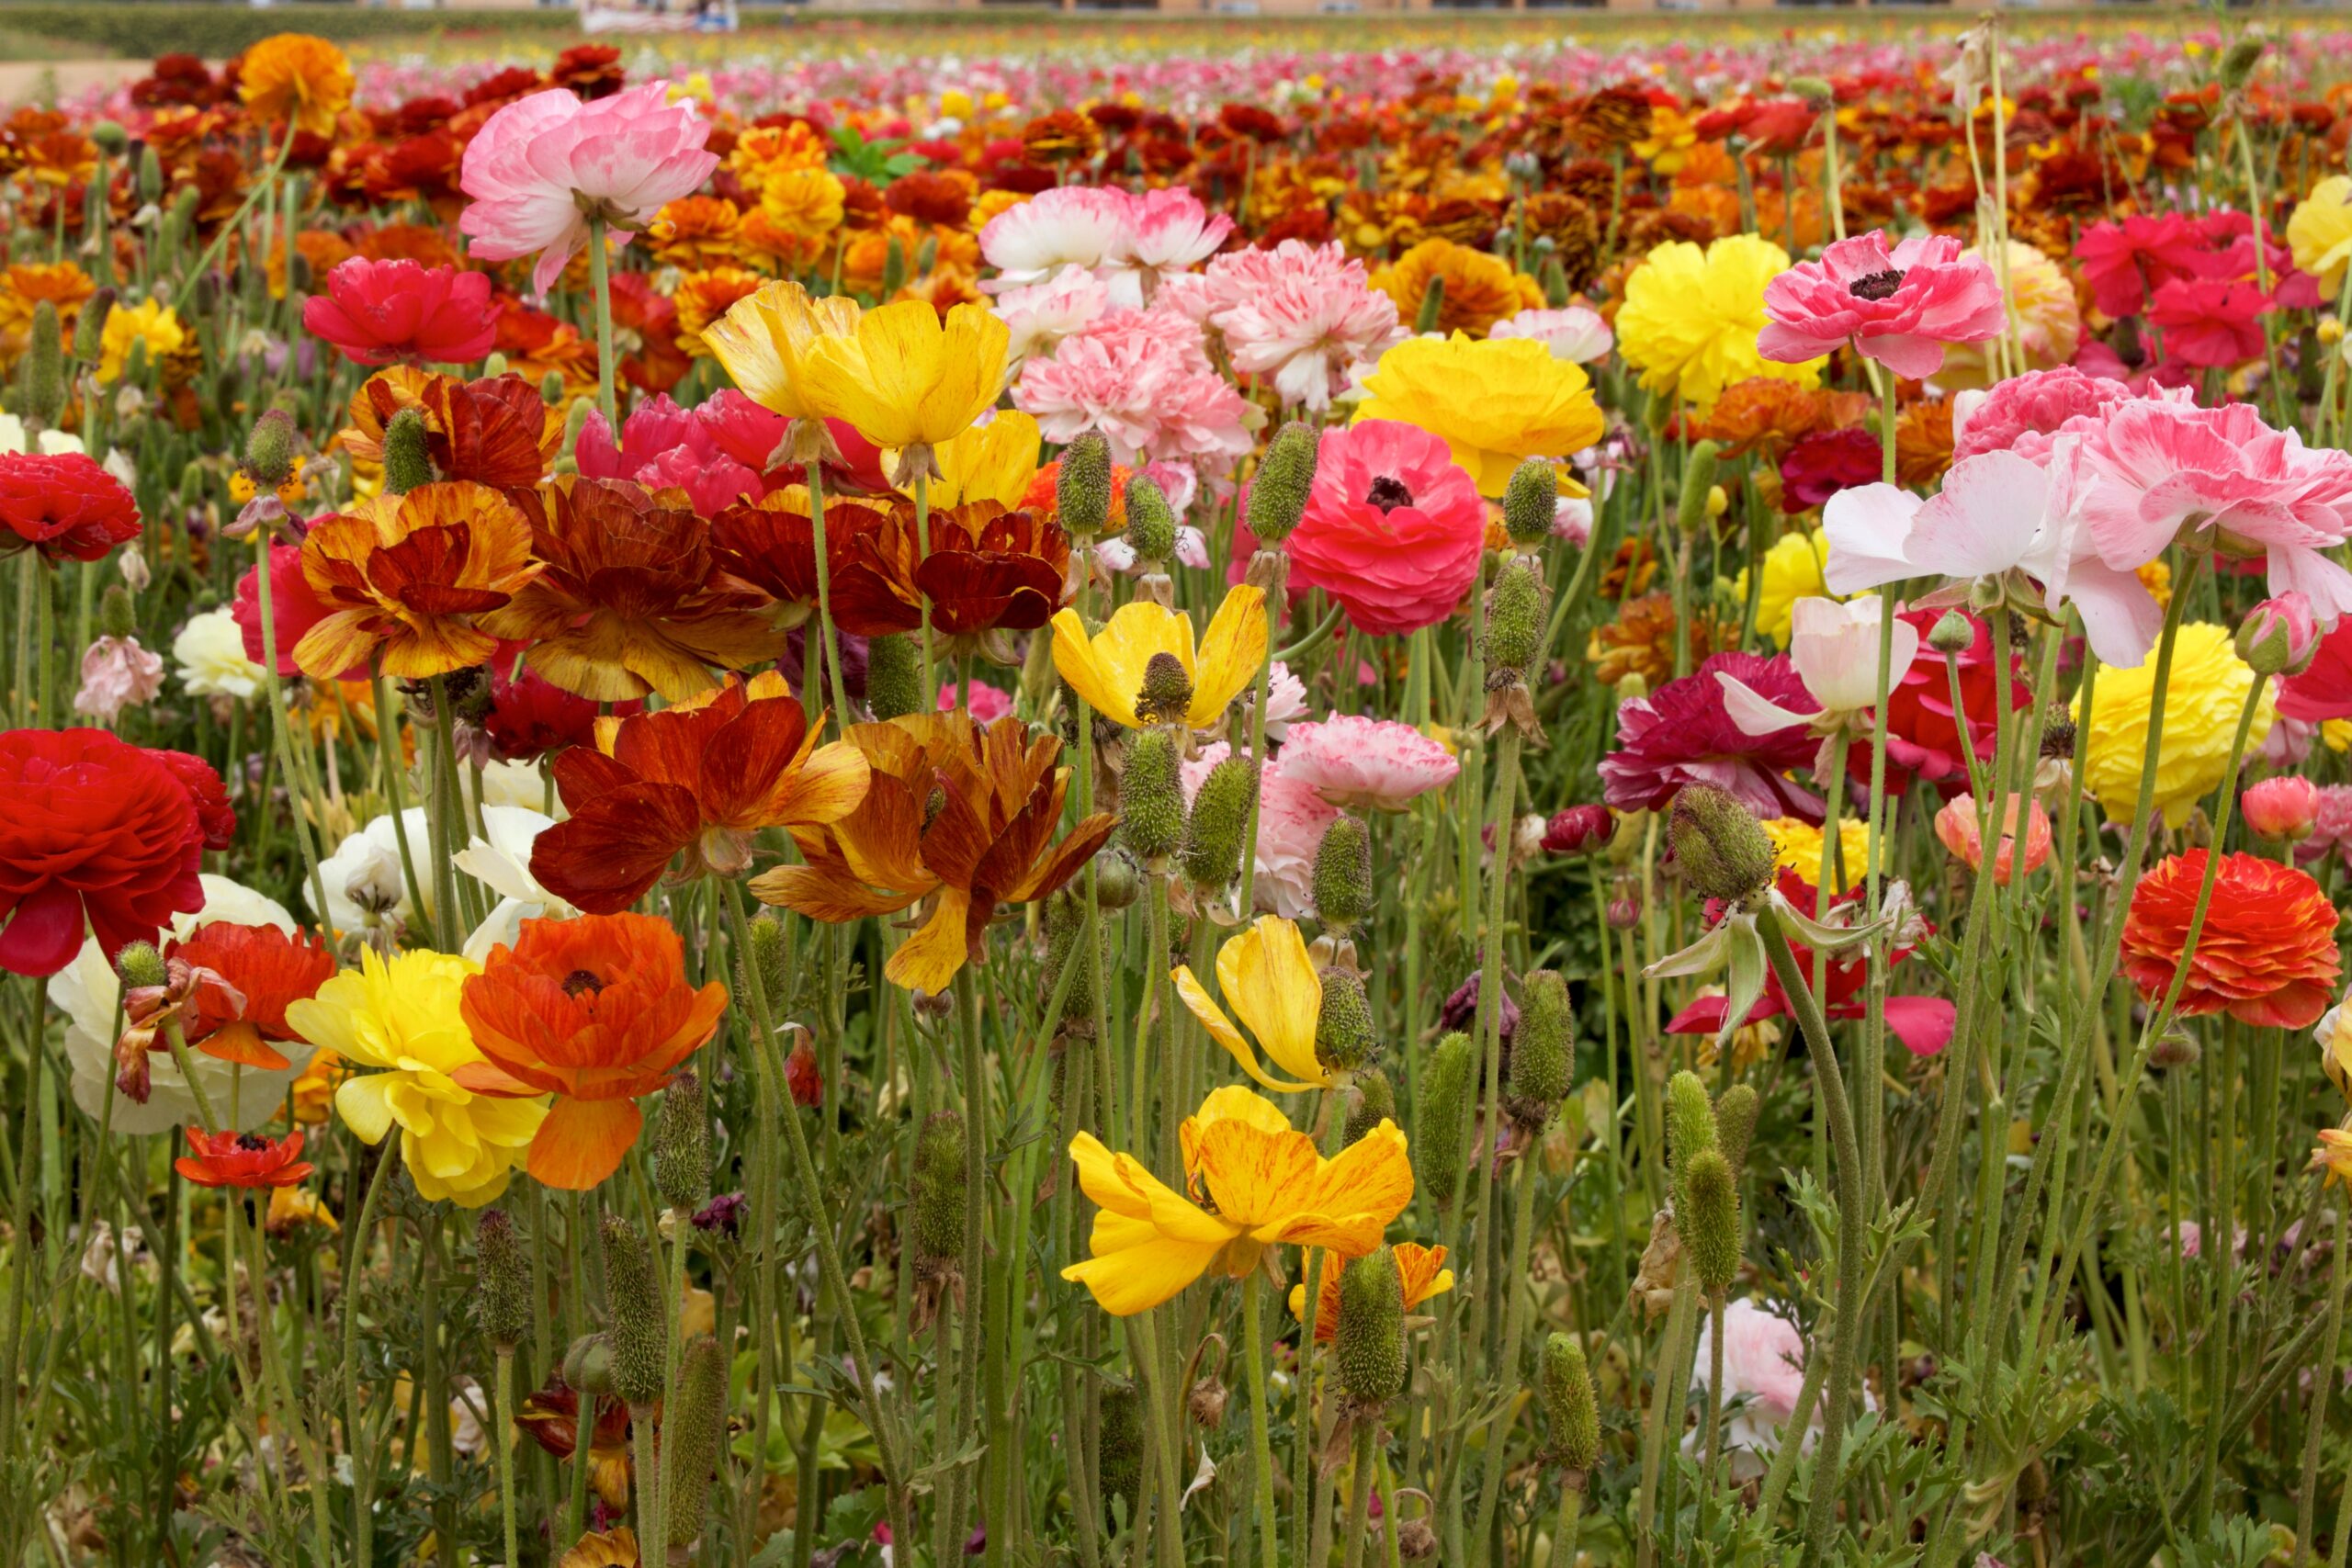 Carlsbad Flower Fields